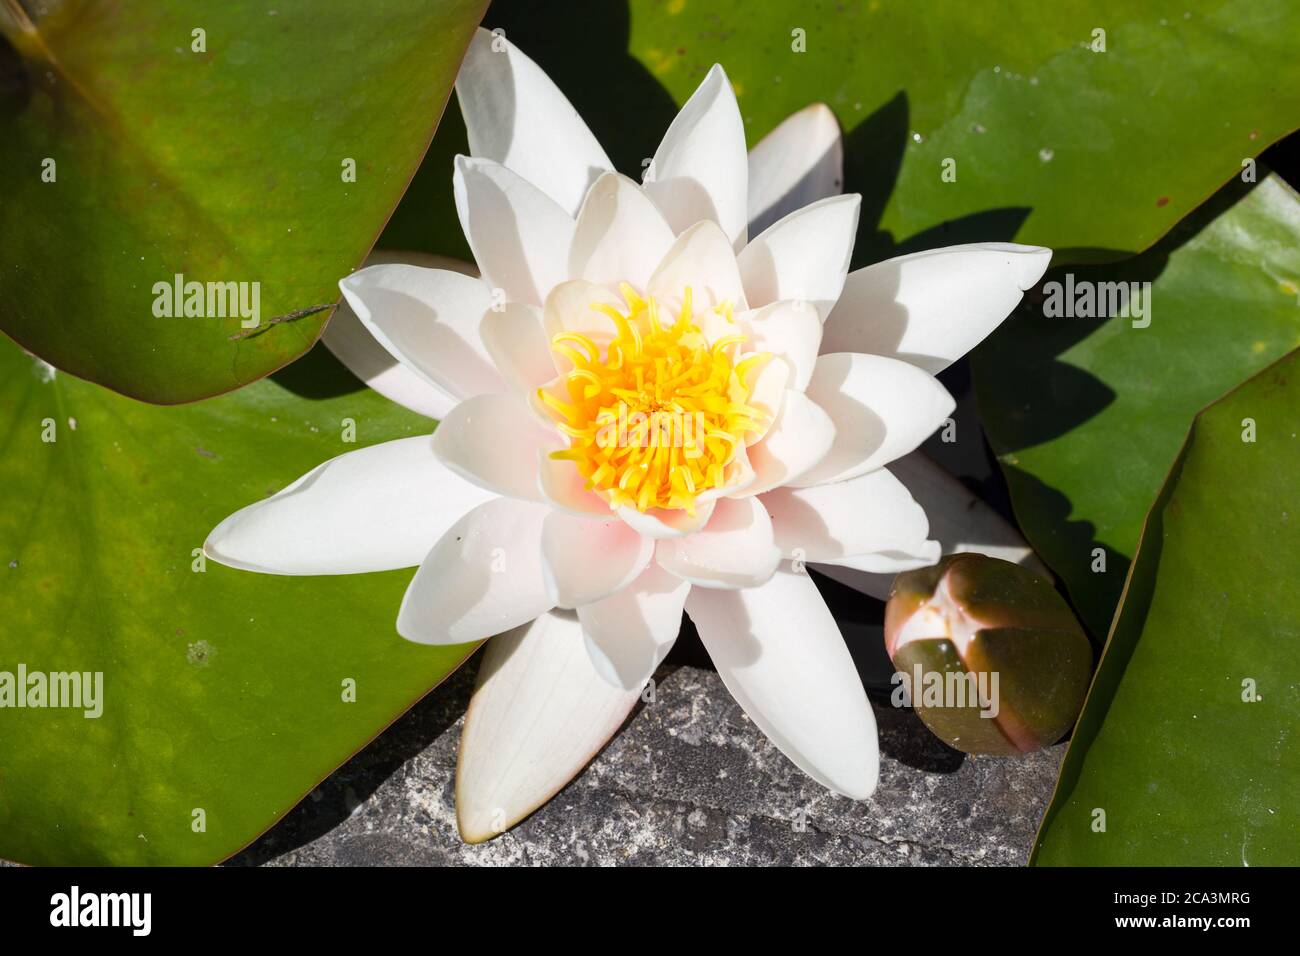 Nahaufnahme einer Seerose mit weißen Blütenblättern und gelben Blütenstillen. Lateinischer Name Nymphaea hybride Marliacea Rosea. Stockfoto